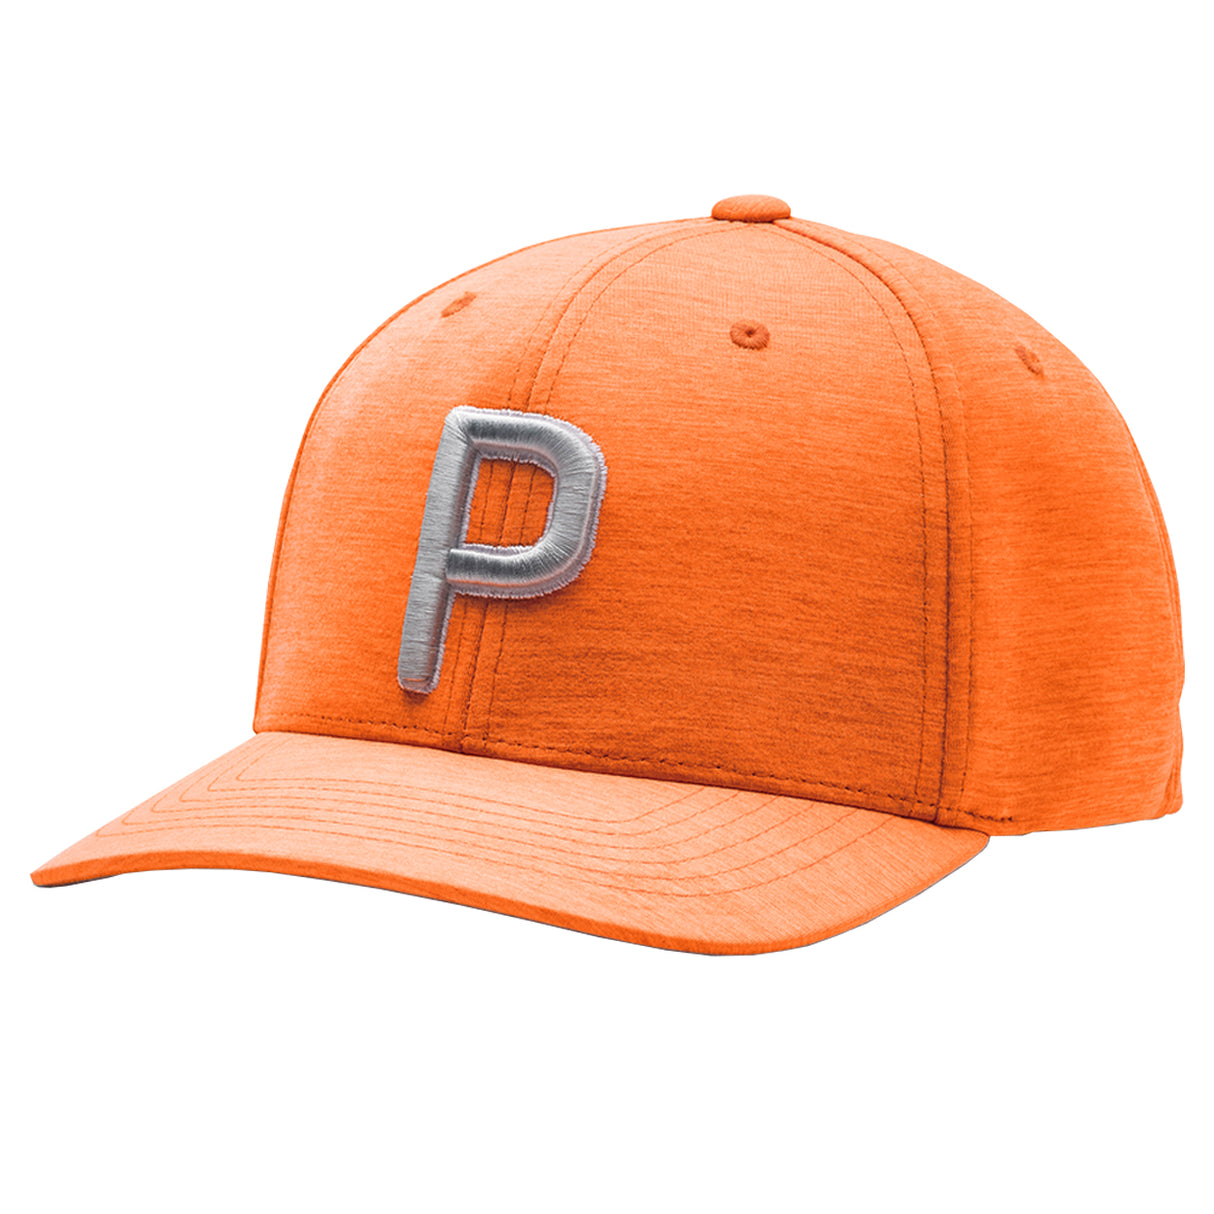 Puma Golf 110 P Snapback Adjustable Hat